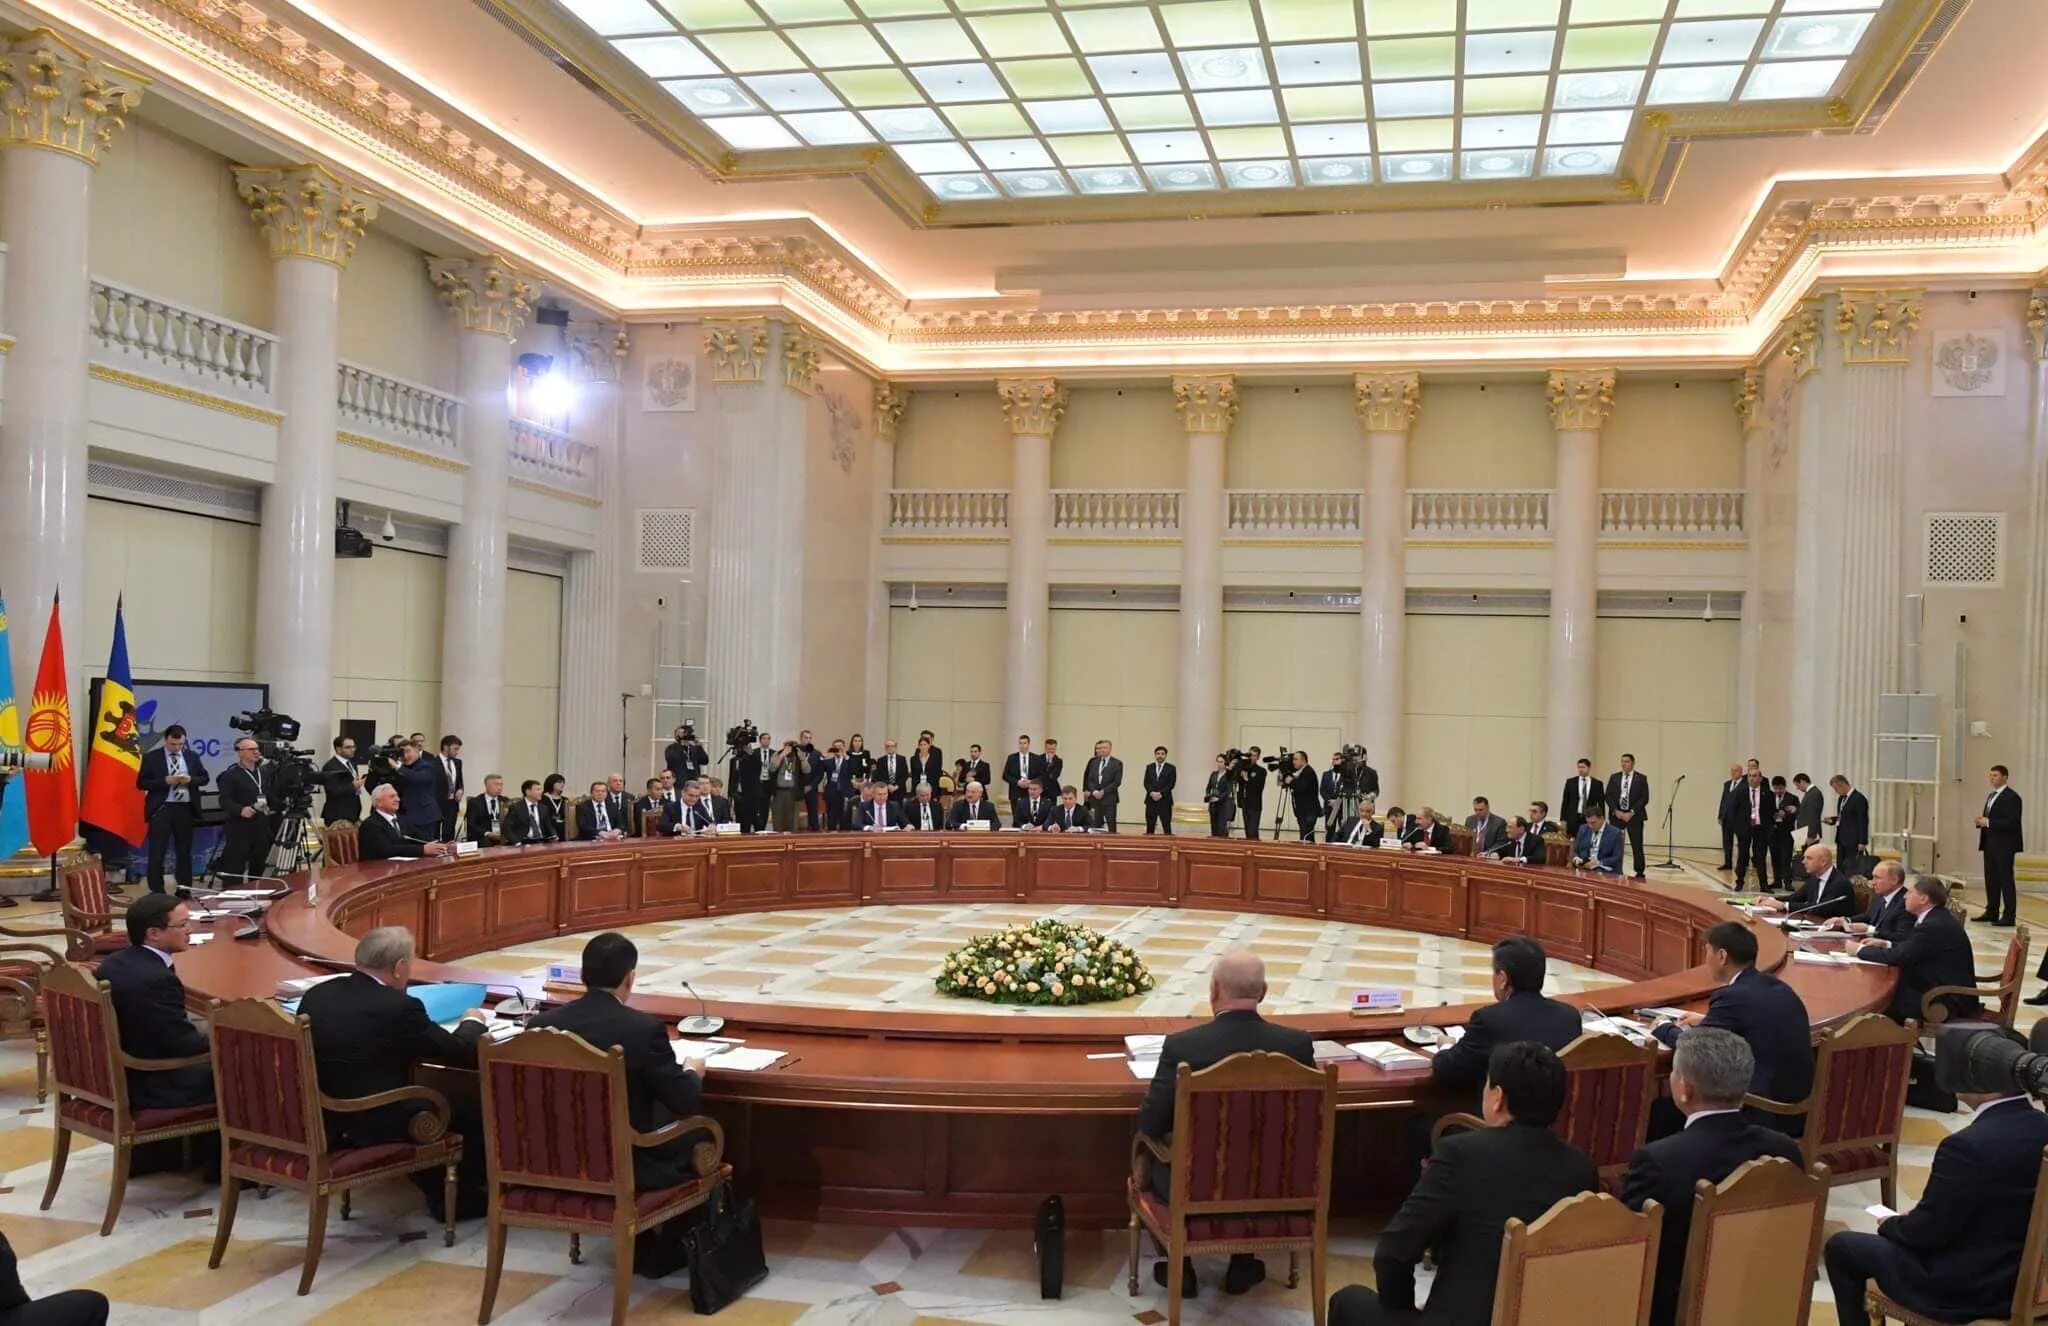 Высший Евразийский экономический совет. Заседание высшего Евразийского экономического совета. Заседание ВЕЭС 2018 года. Молдова зал заседаний.